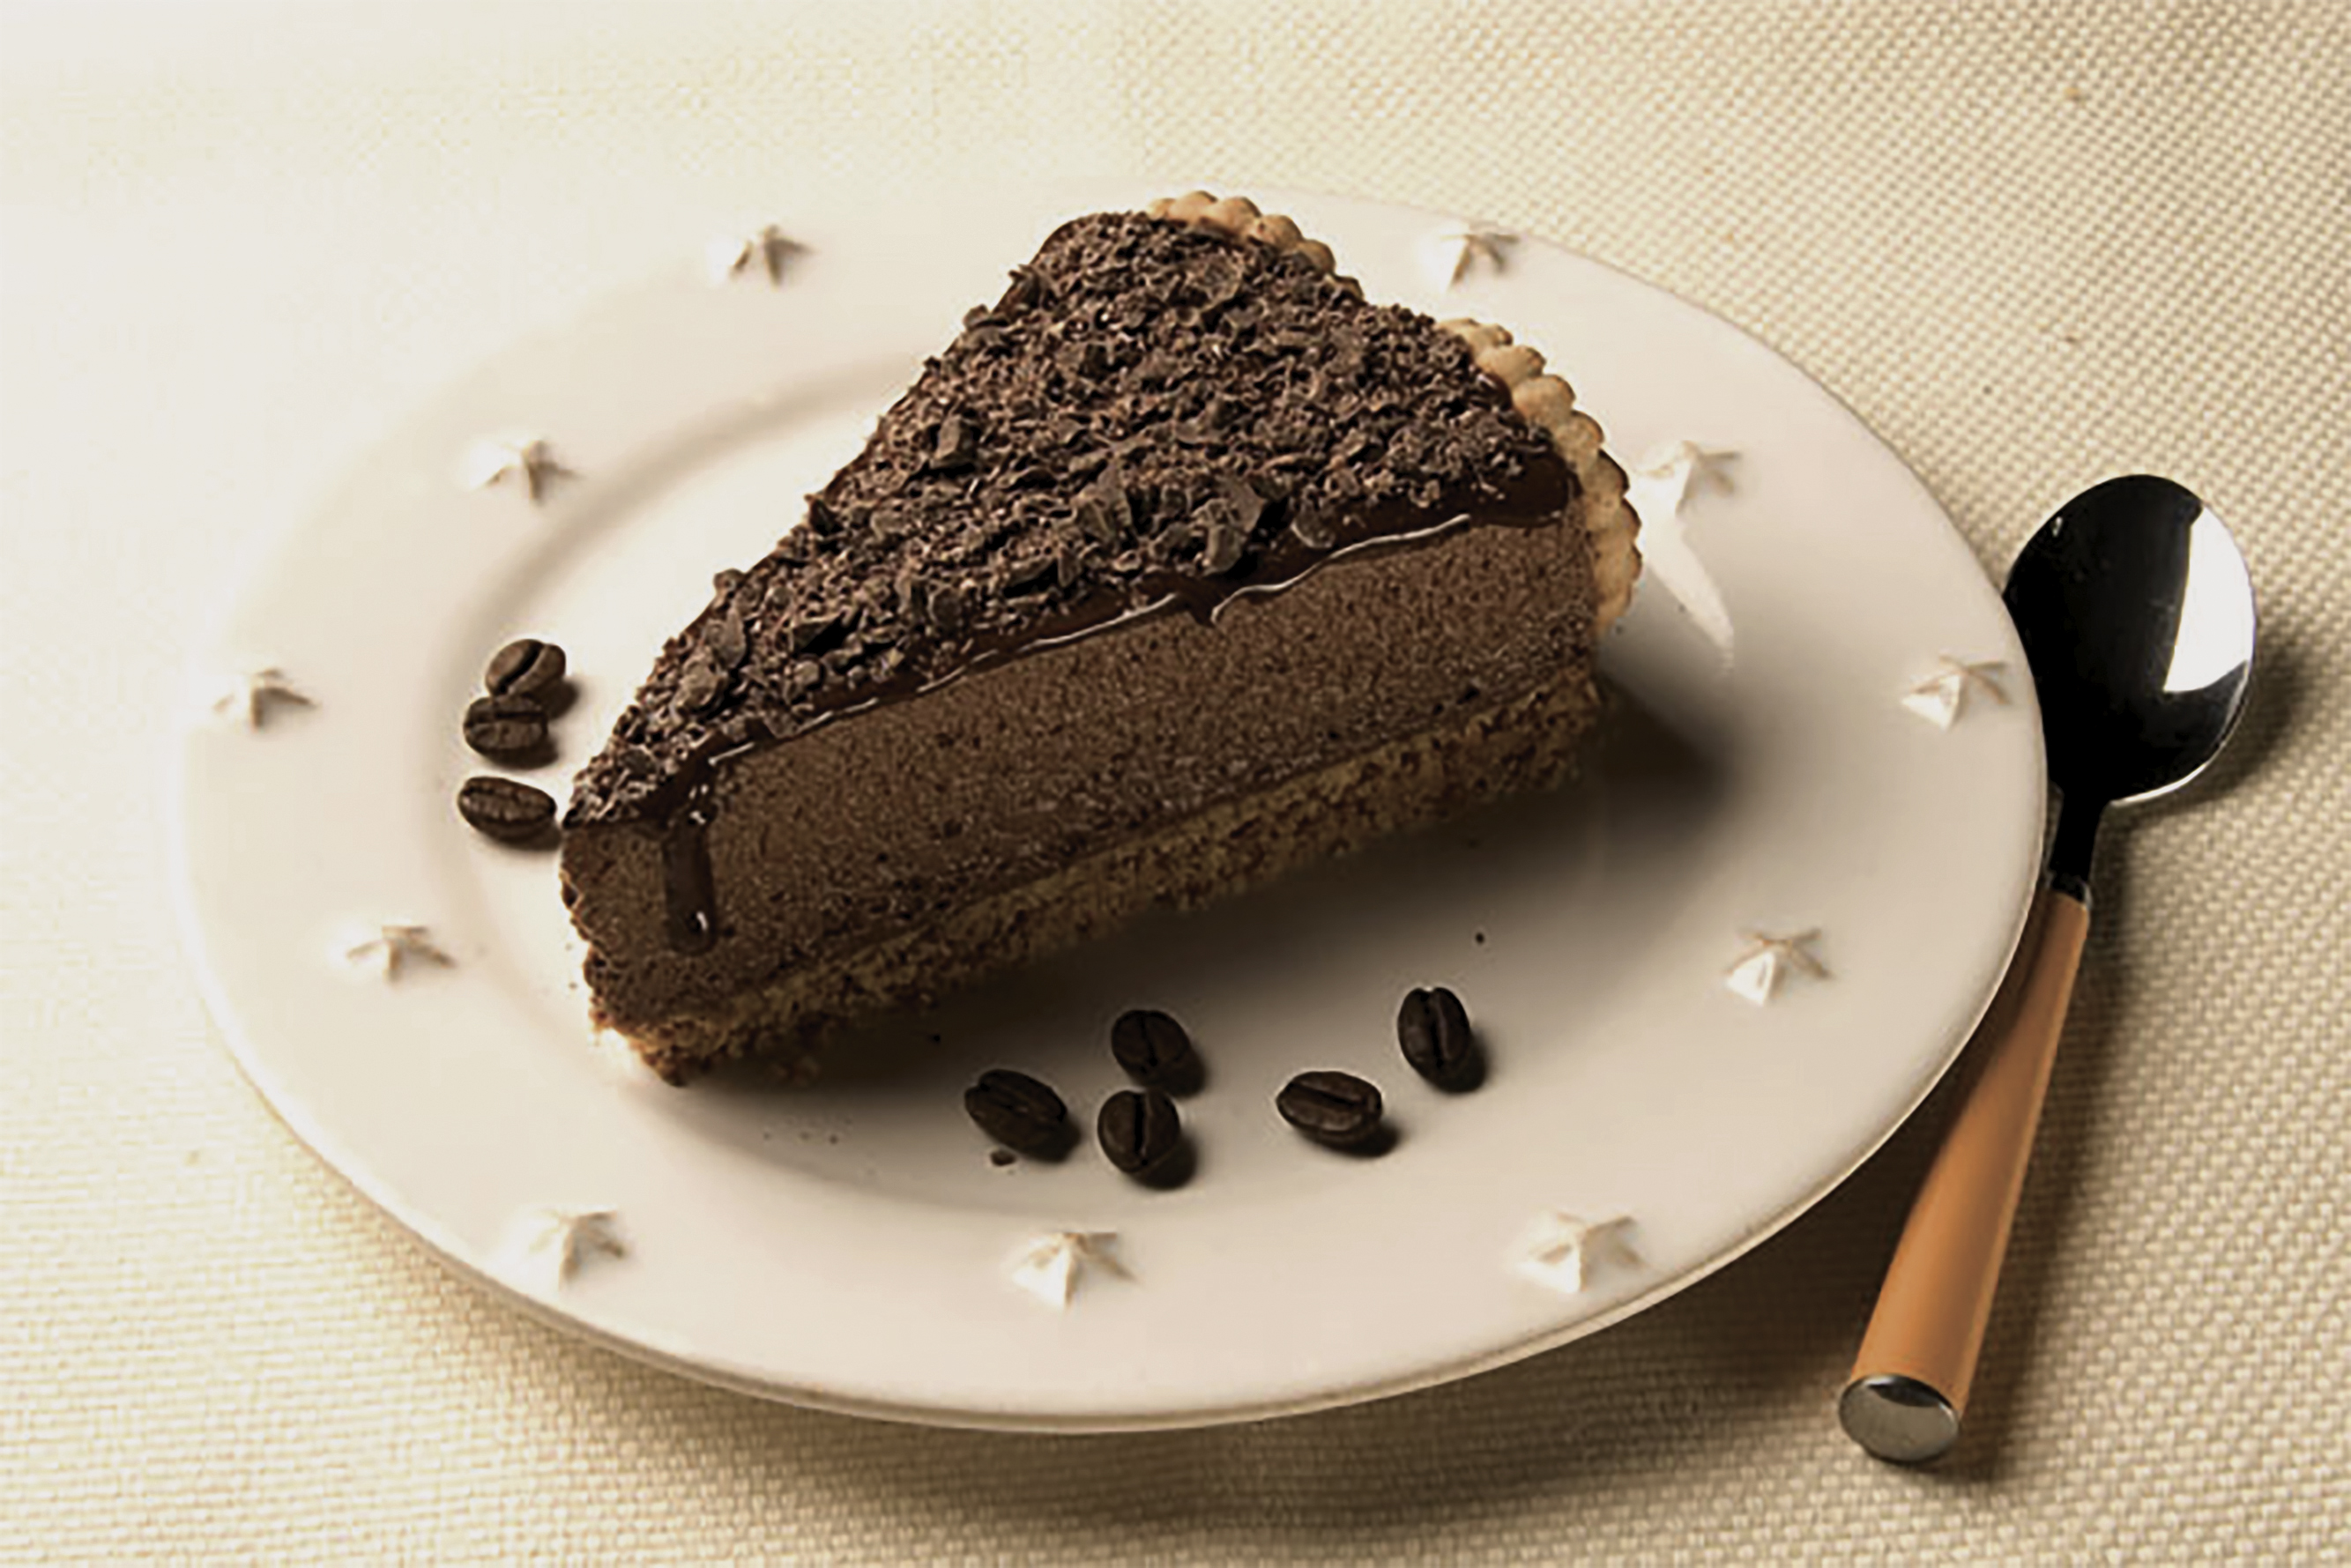 Servida bem gelada, a Torta Mousse de Café é uma sobremesa requintada! / GB Imagem